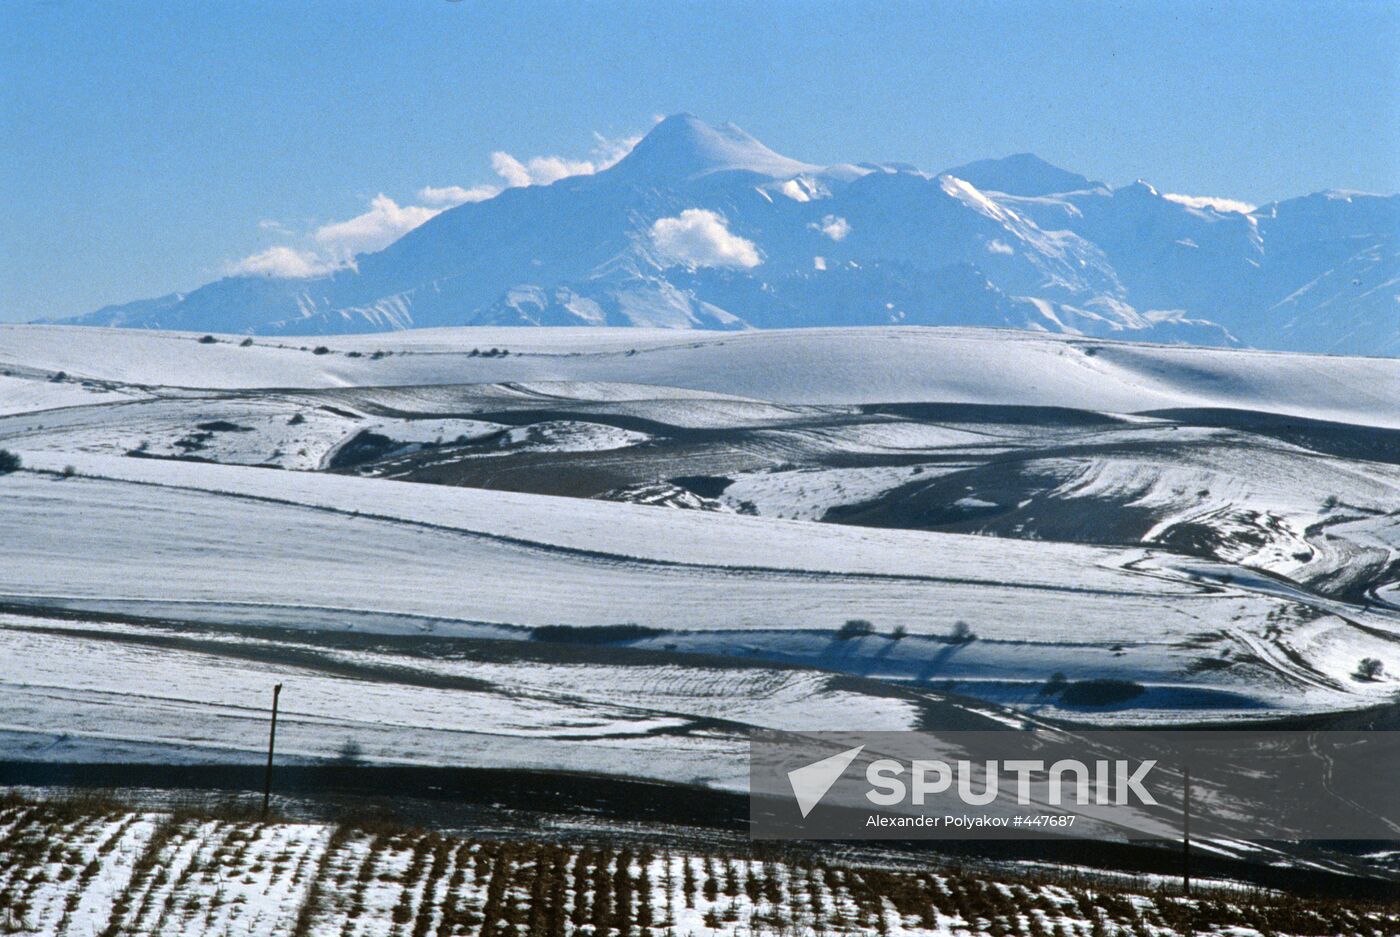 Kazbek Mountain